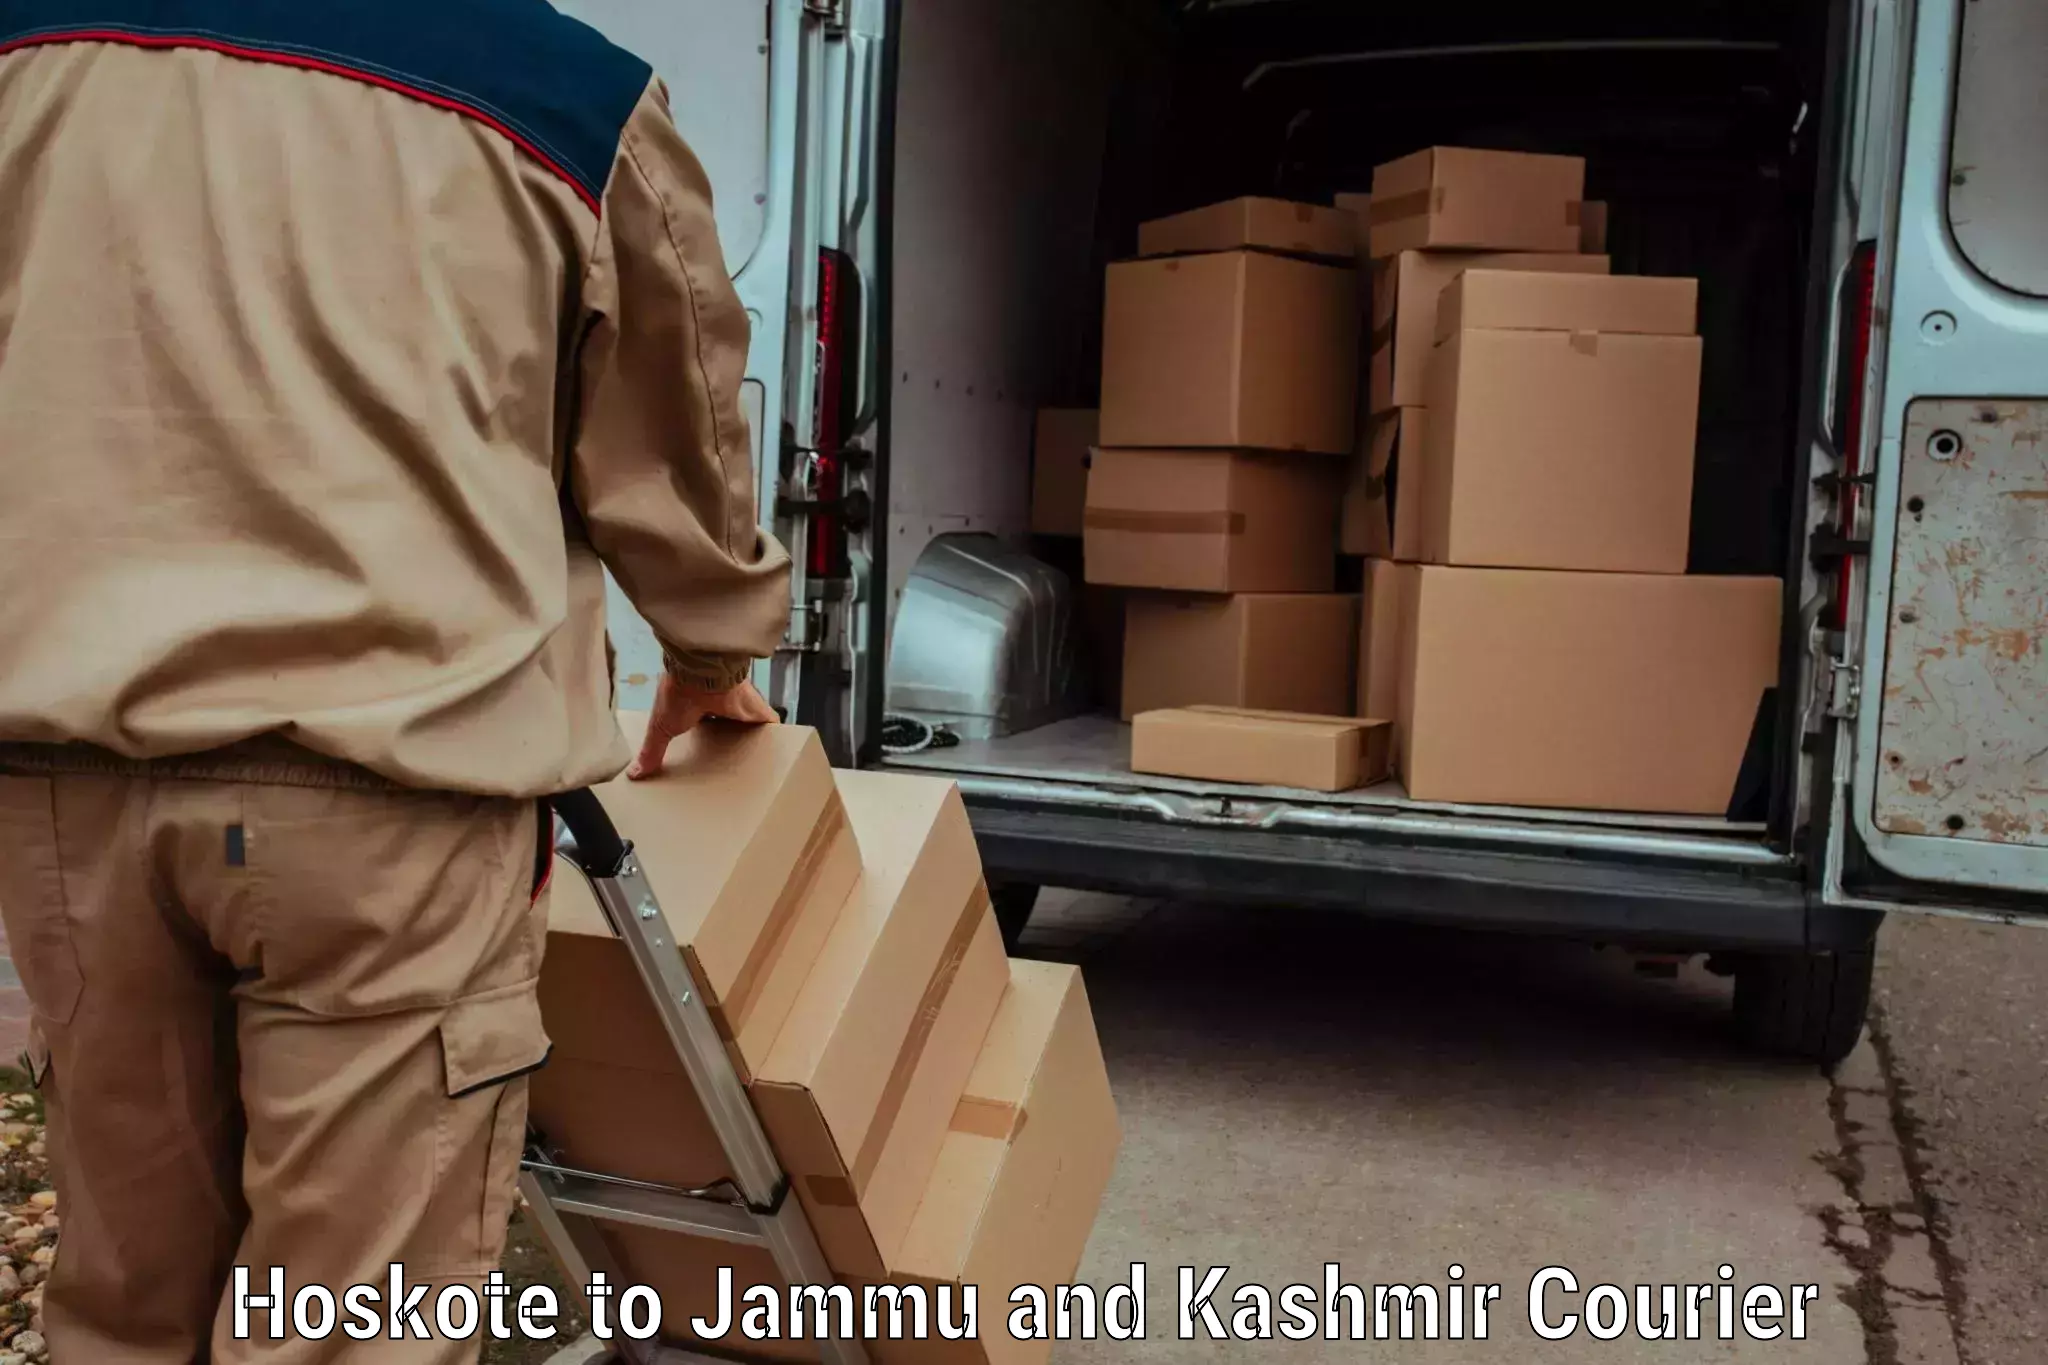 Same day shipping Hoskote to University of Kashmir Srinagar